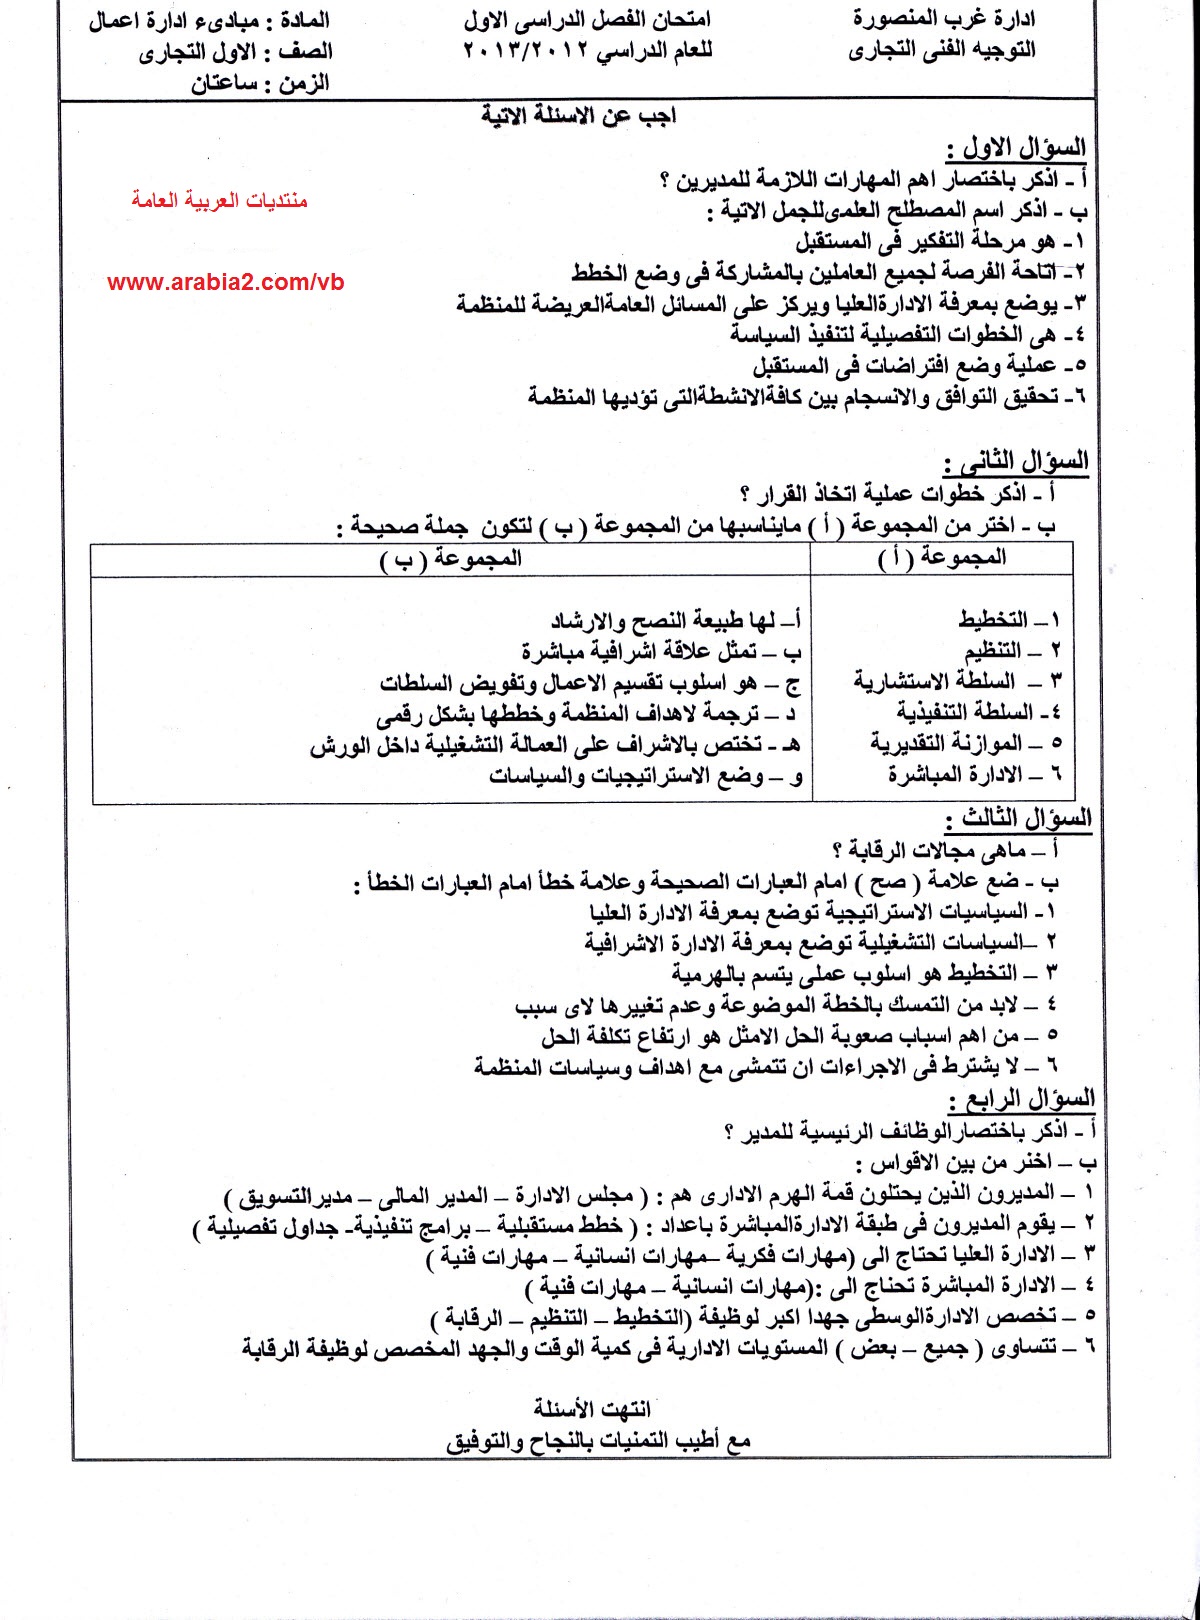 مراجعة مبادئ إدارة أعمال للصف الأول التجارى ترم اول 2014 المنهاج المصري